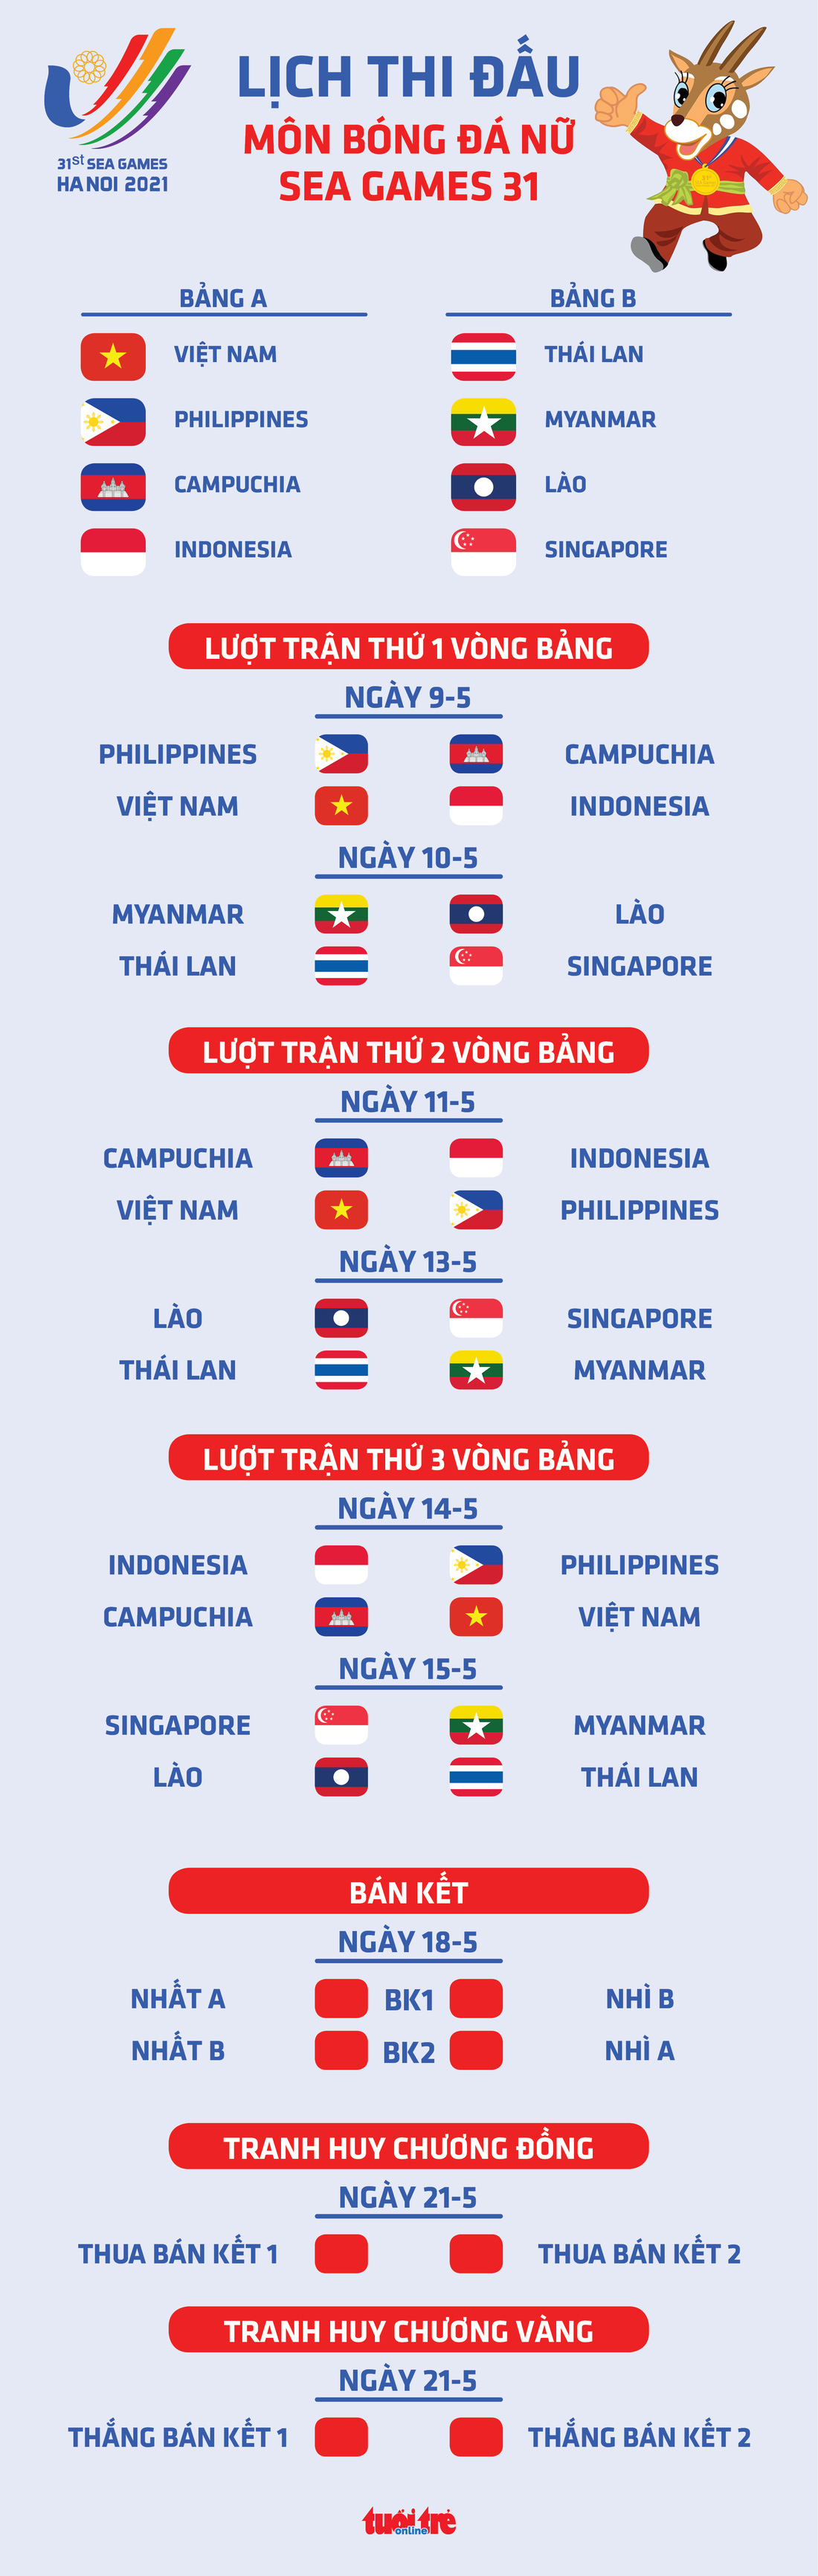 Lịch thi đấu bóng đá nữ SEA Games 31: Việt Nam gặp Philippines ở lượt 2 vòng bảng - Ảnh 1.